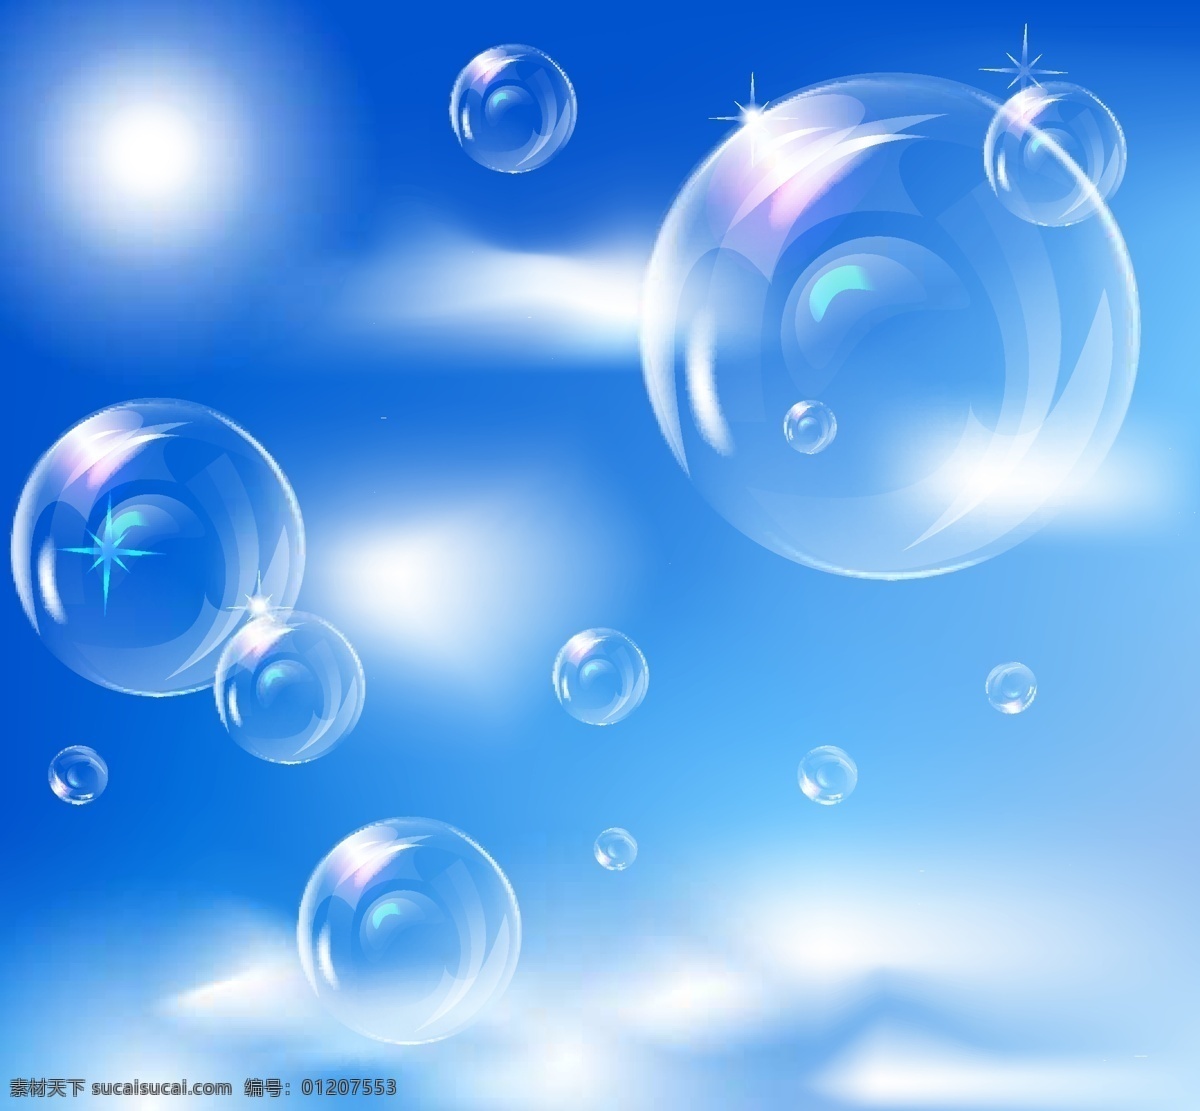 透明 气泡 背景 矢量 矢量素材 设计素材 背景素材